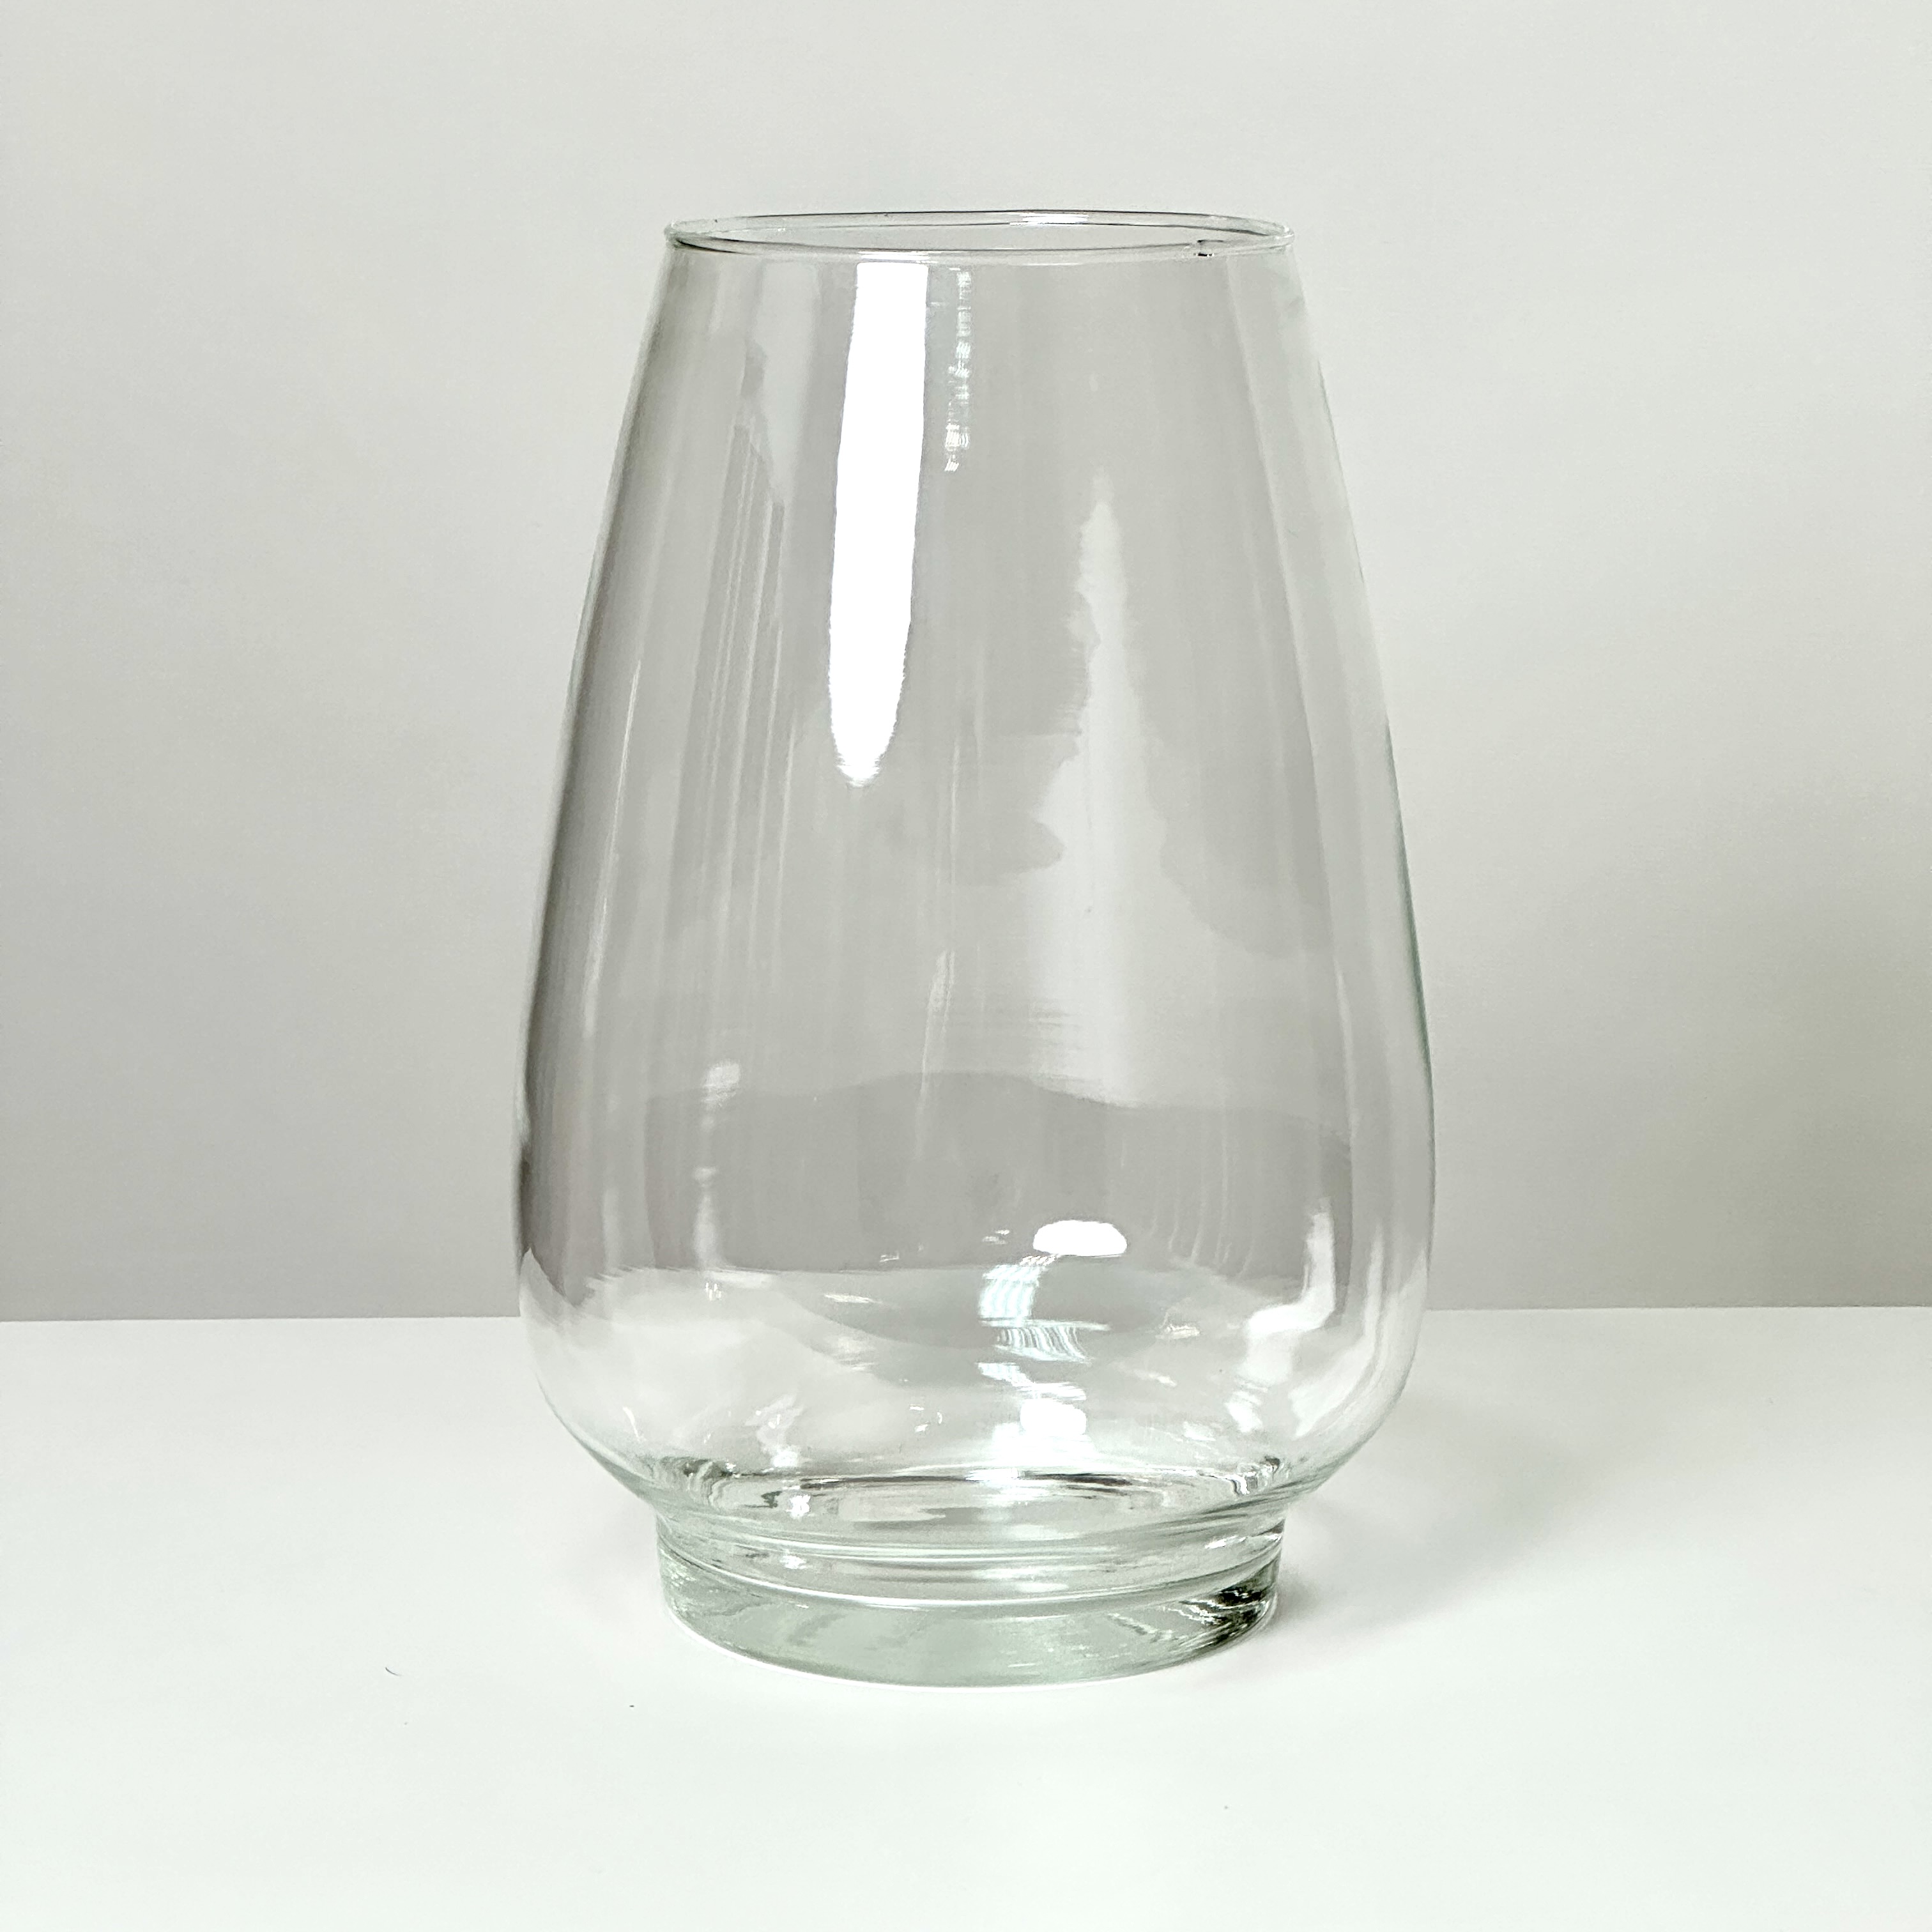 Ваза Вурм ваза сливовый конфитюр стекло цвет синий 25 см